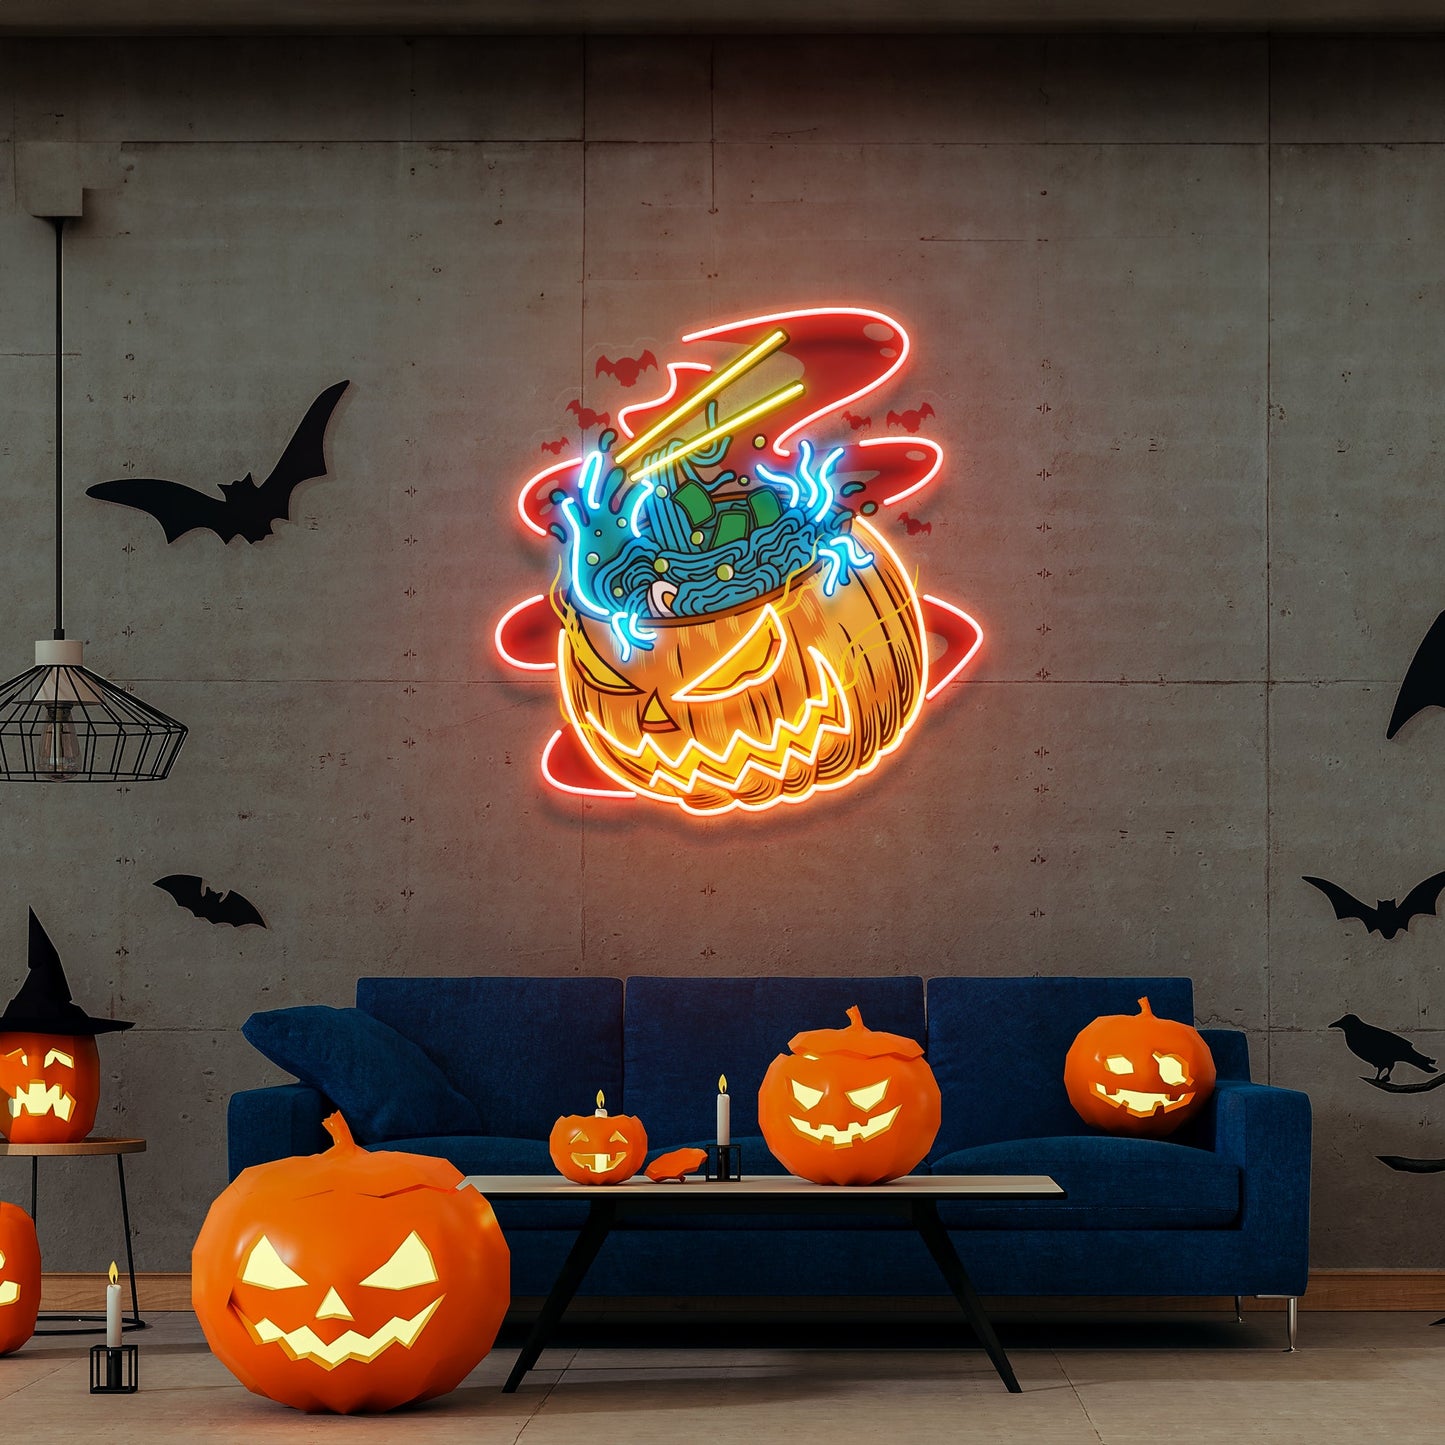 Pumpkin Ramen Monster With Halloween Artwork Led Neon Sign Light - Neonzastudio